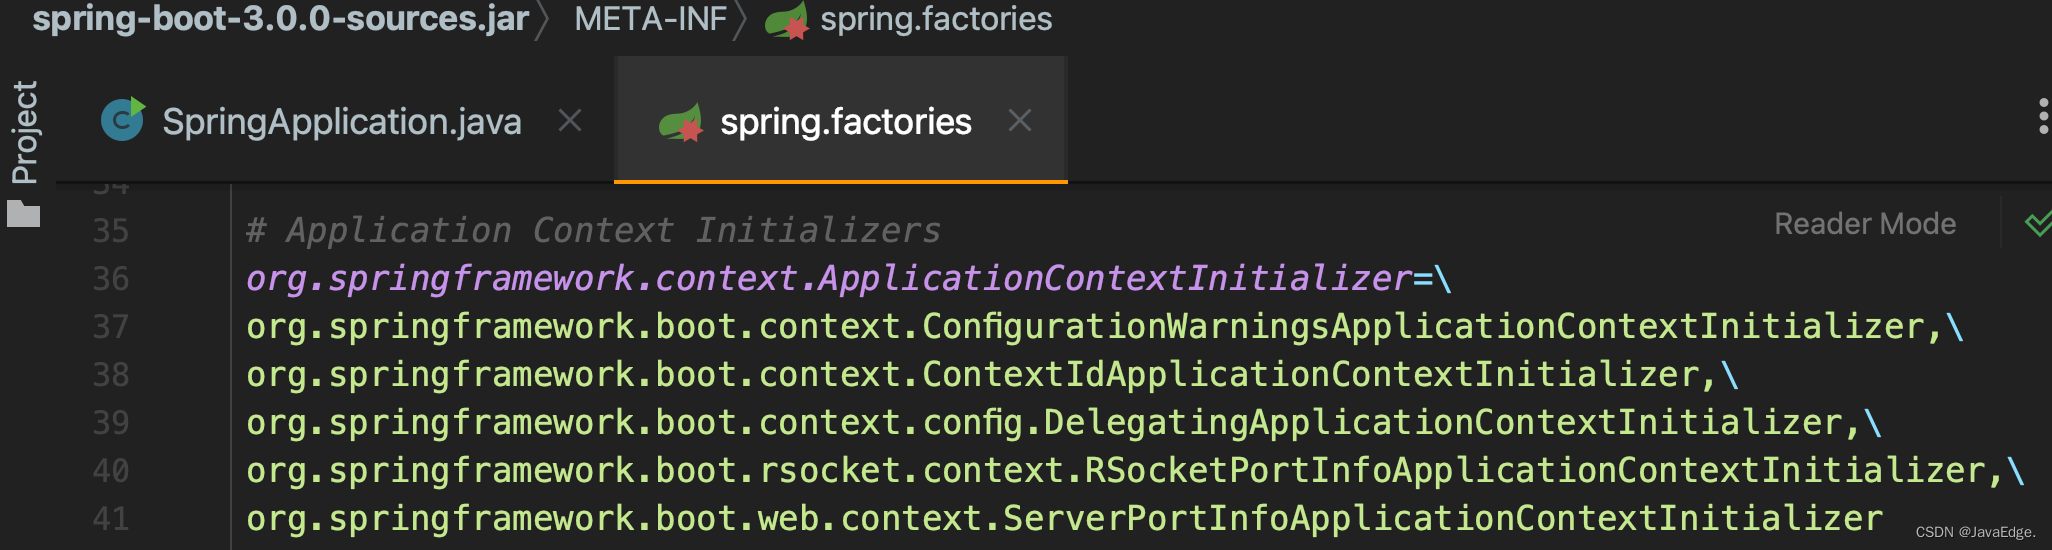 可能是全网最全的SpringBoot启动流程源码分析（最新3.x版本）_spring